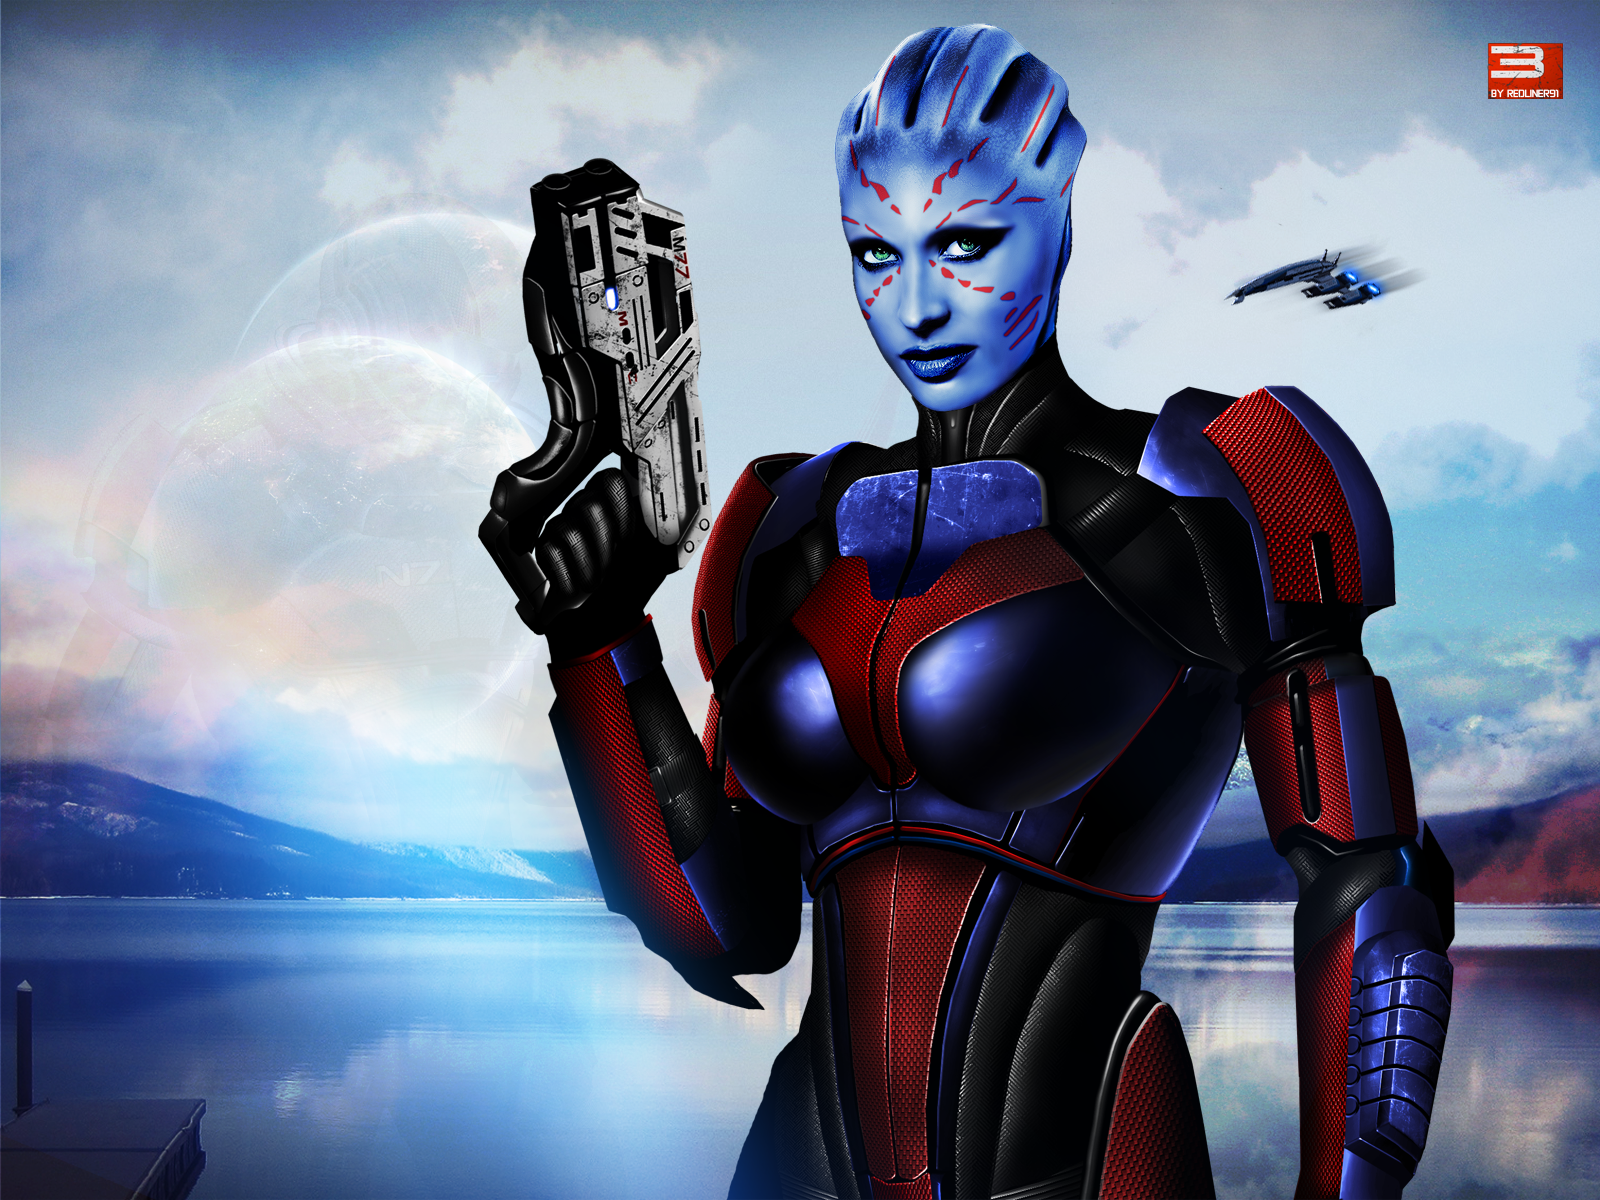 Mass Effect 3 Asari Justicar Shepard V2 (2012)